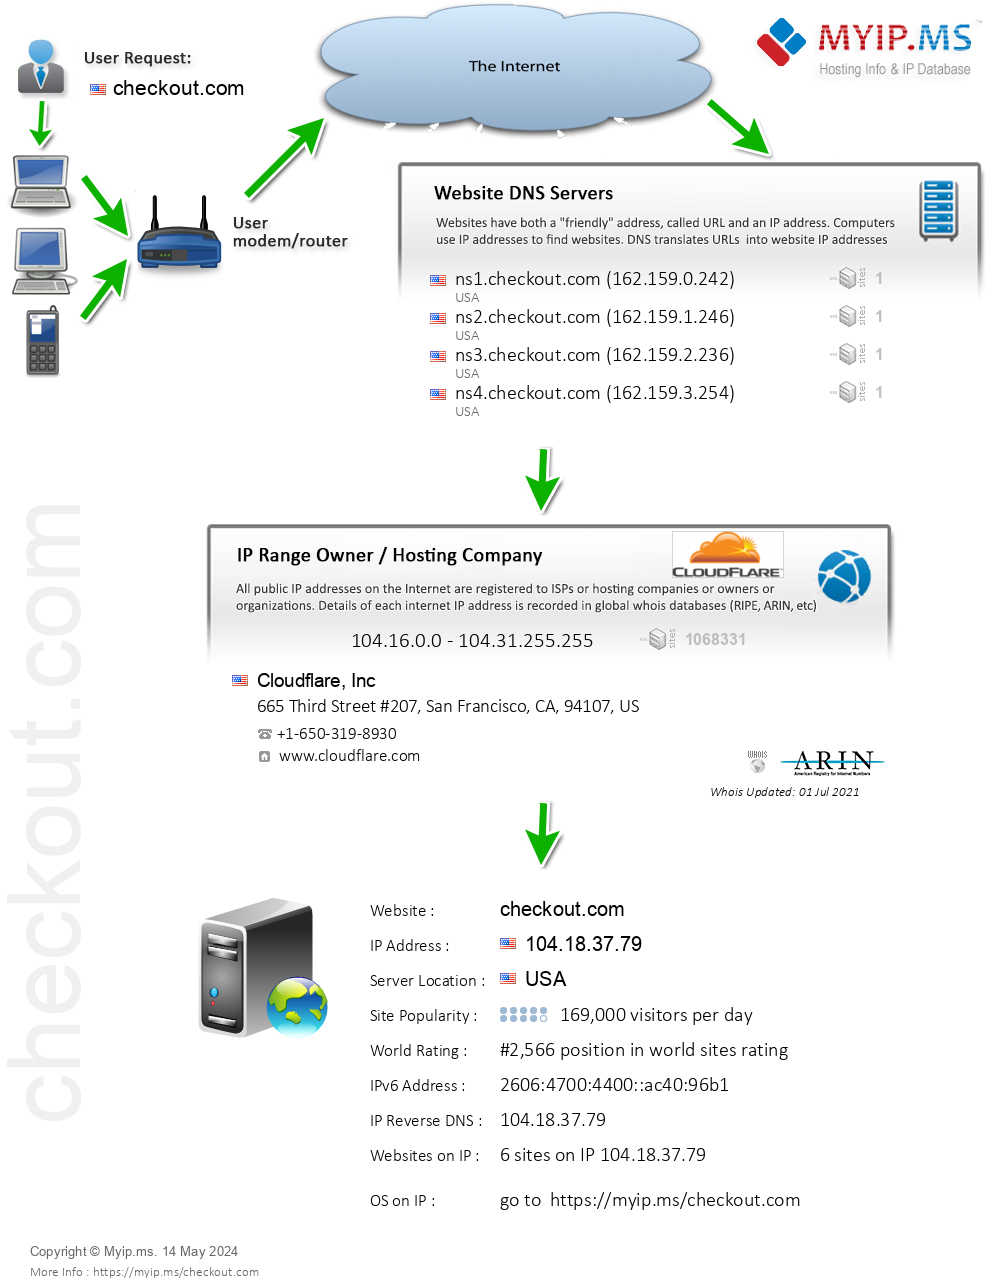 Checkout.com - Website Hosting Visual IP Diagram